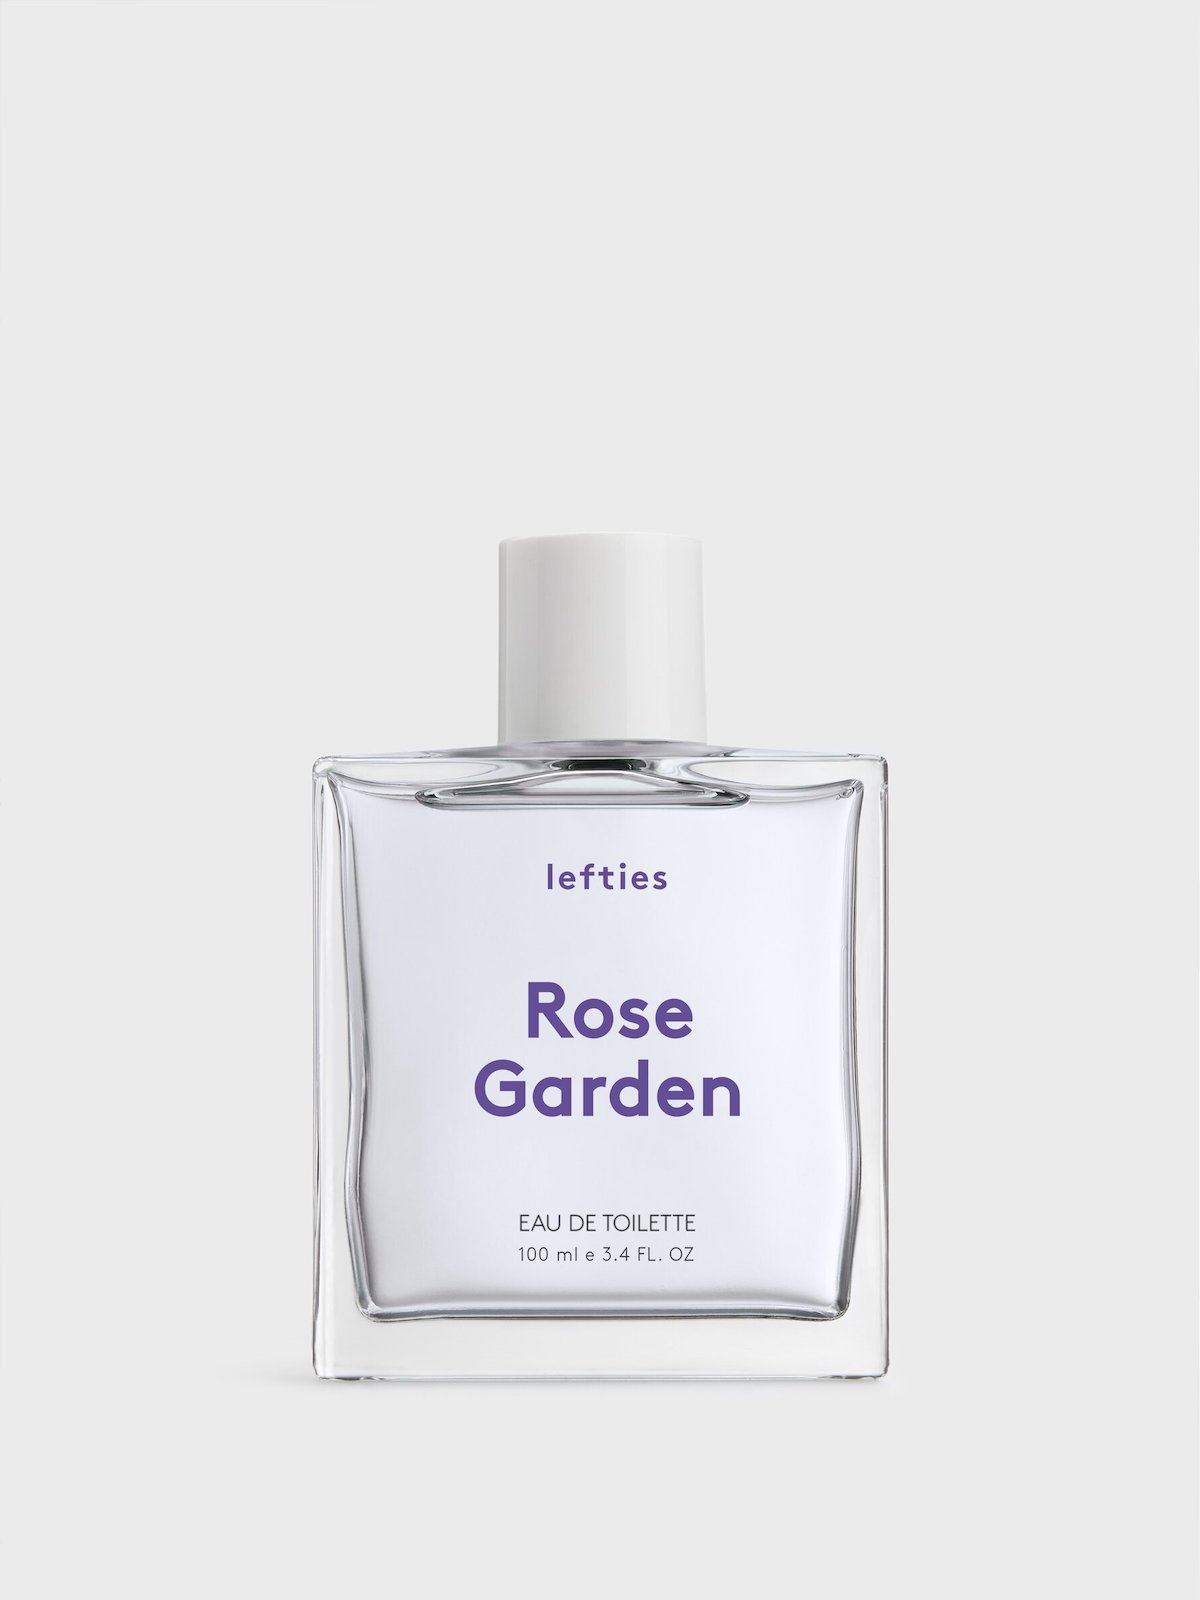 Le parfum Rose Garden est composé de notes de tête de cassis, de nuances de rose et de notes de fond de musc.